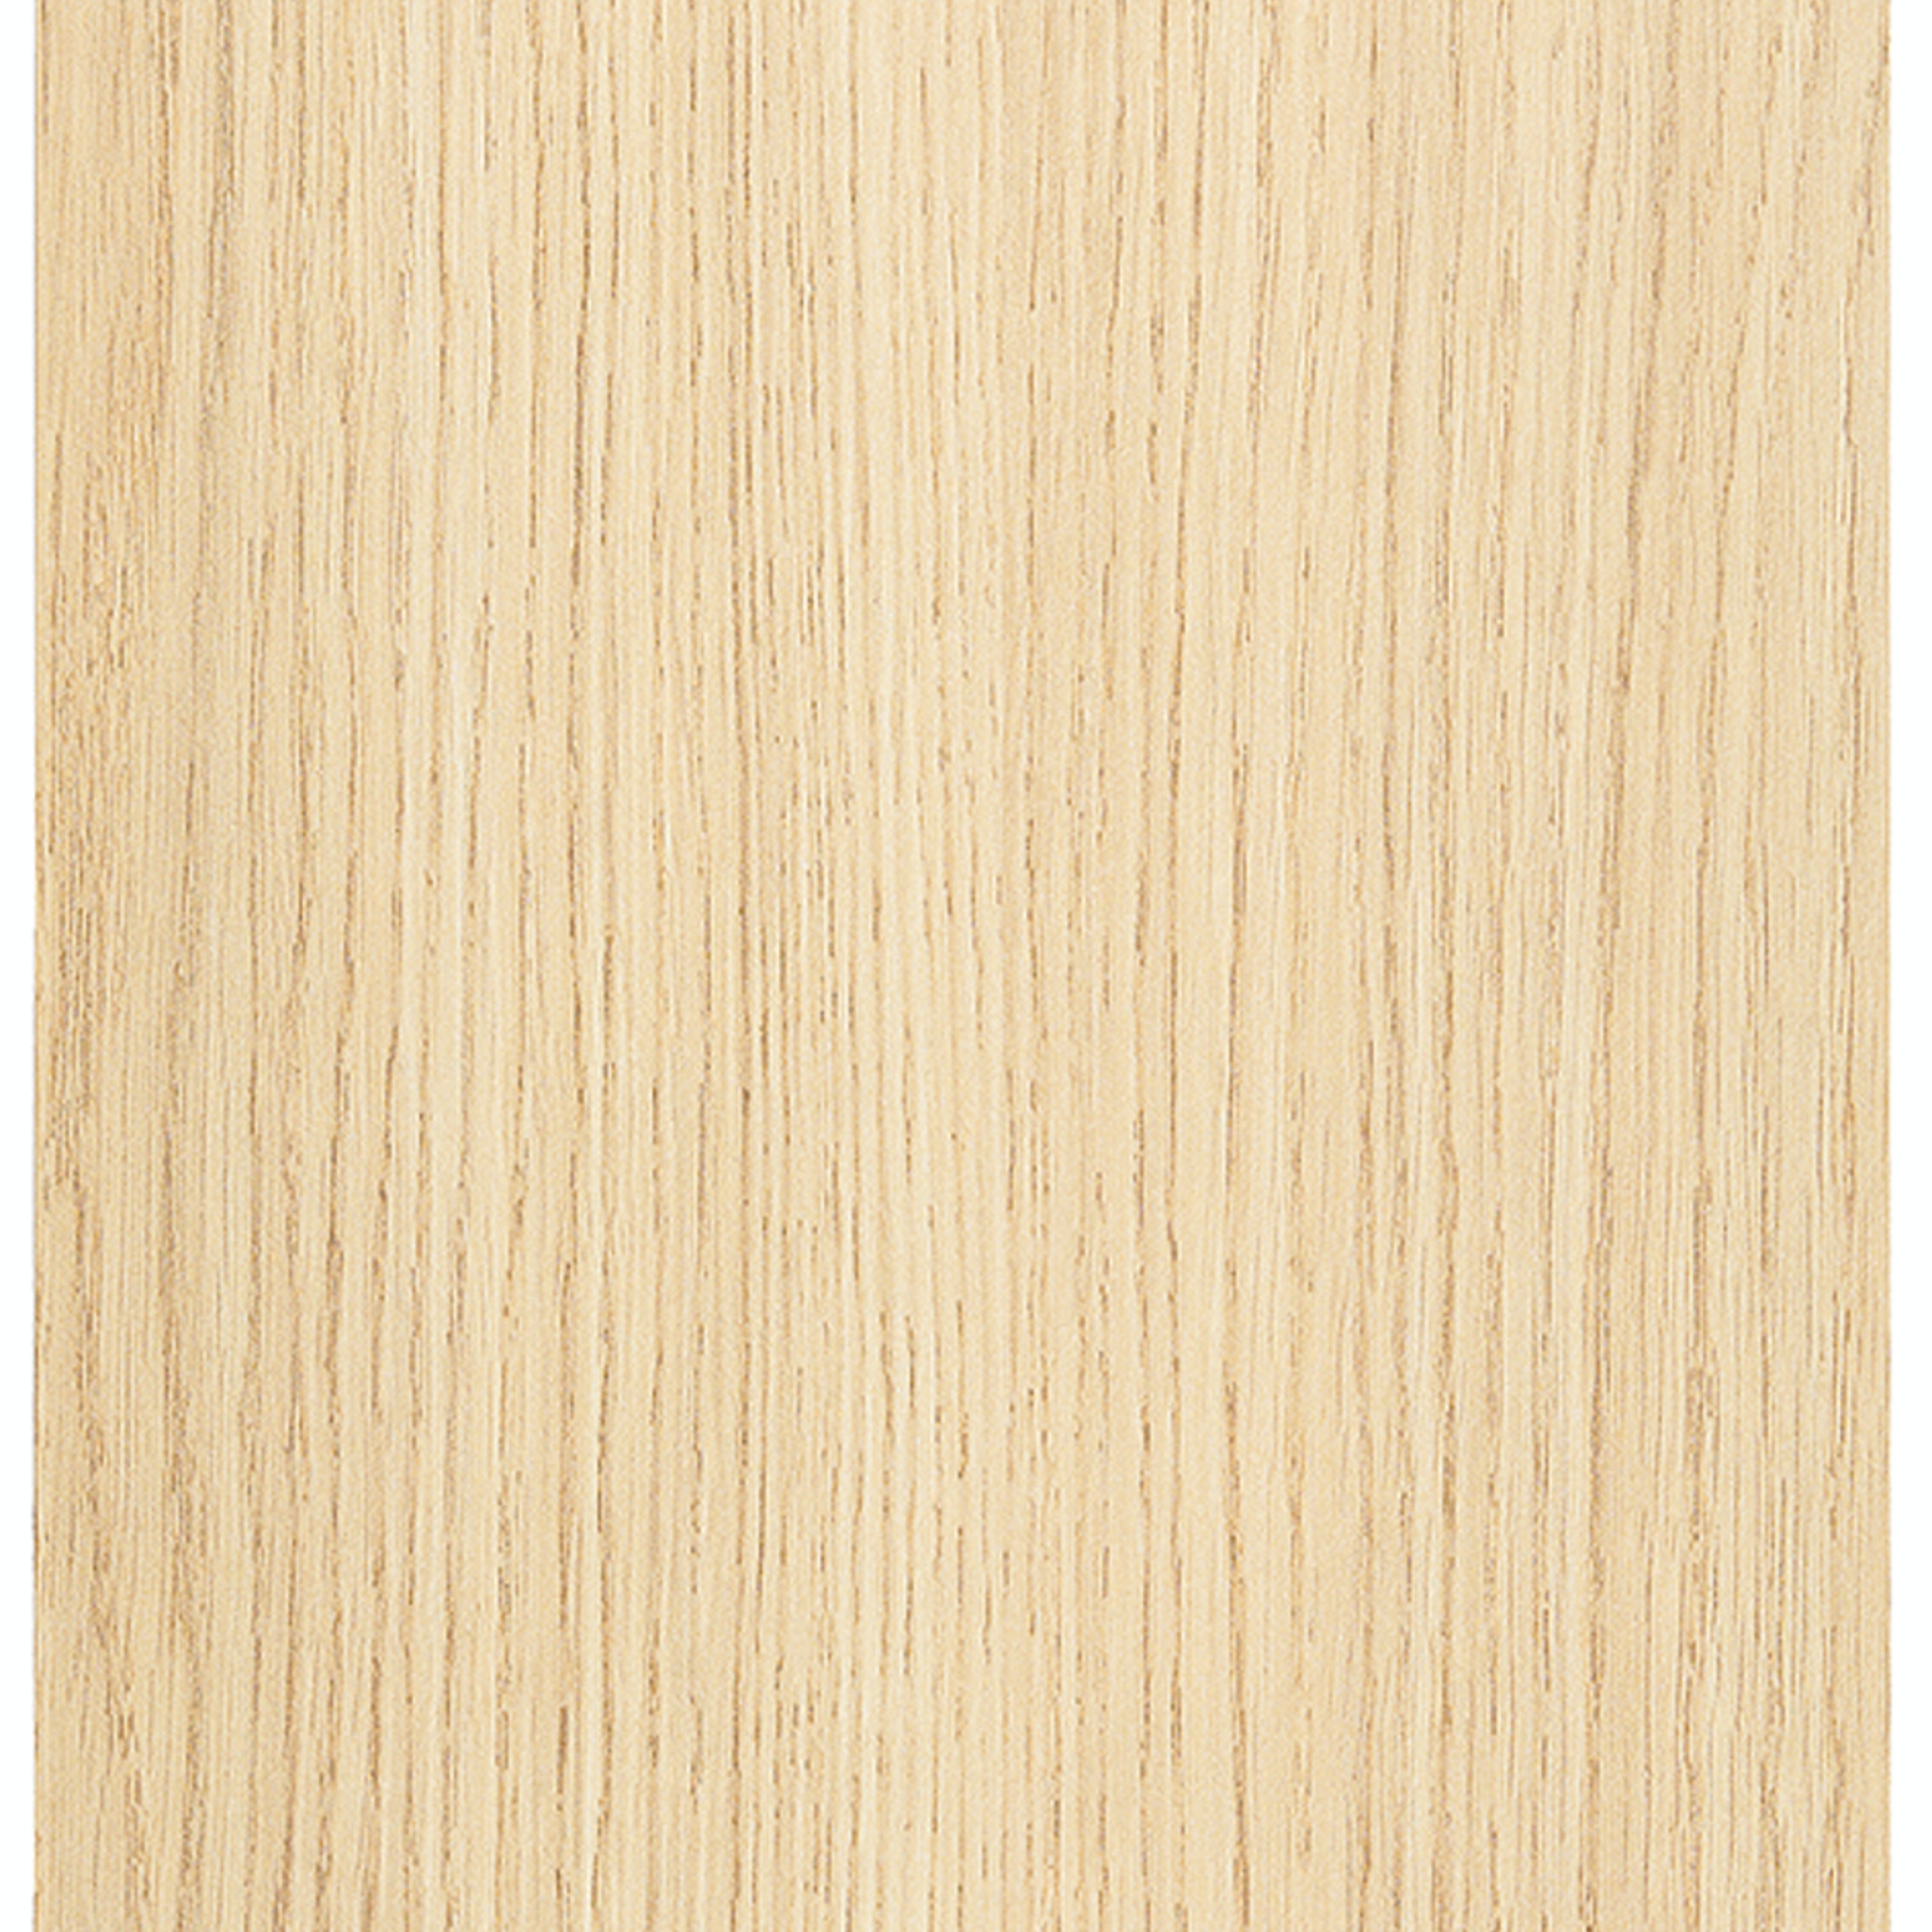 Kunststof hout decor keuken front (8010 Feneline natuur)